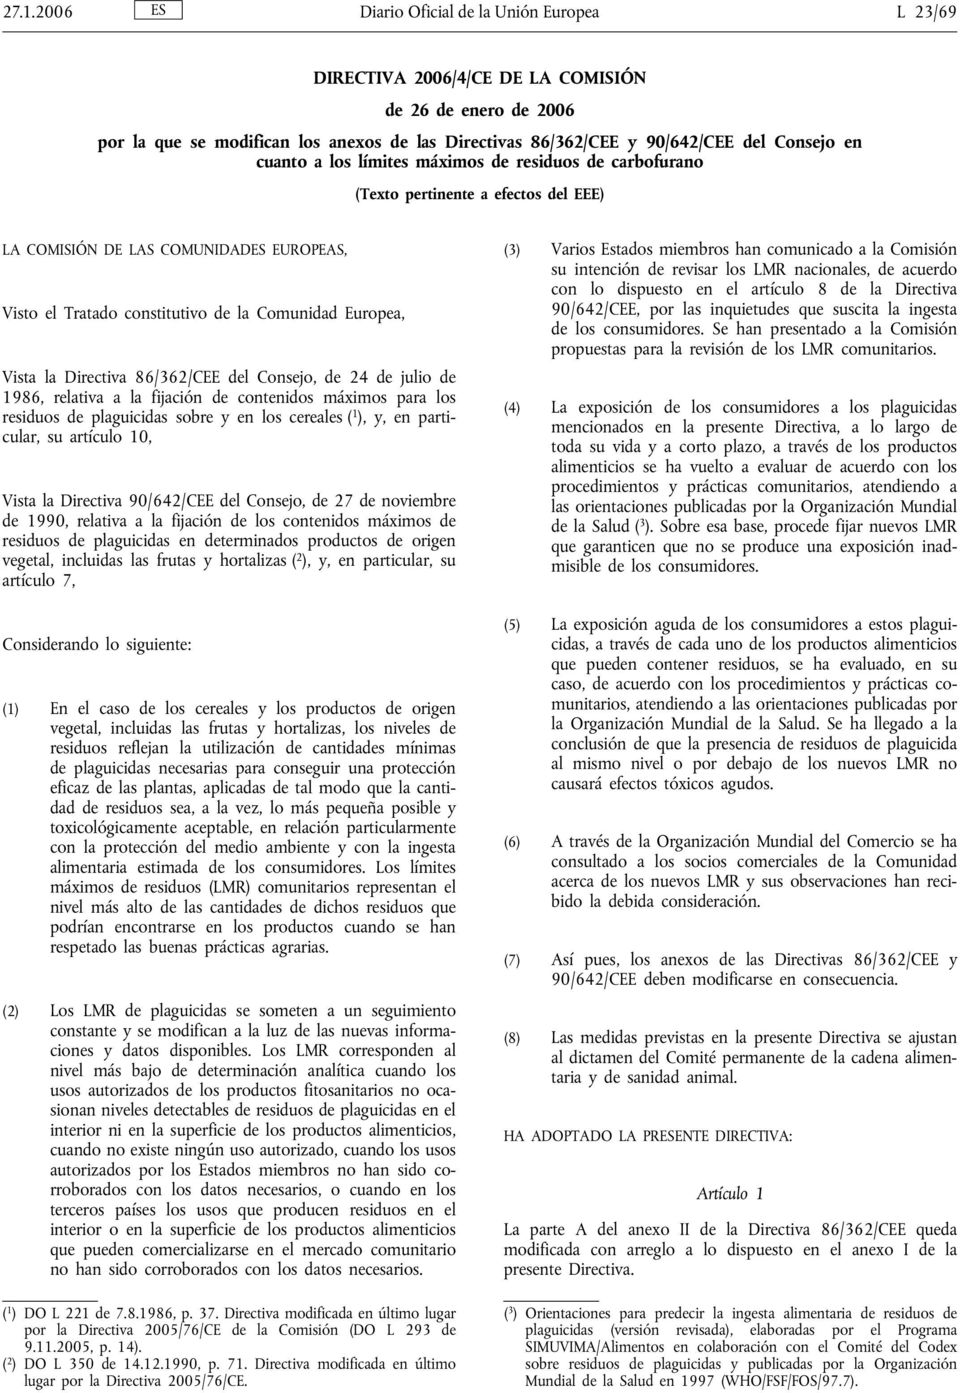 Directiva 86/362/CEE del Consejo, de 24 de julio de 1986, relativa a la fijación de contenidos máximos para los de plaguicidas sobre y en los cereales ( 1 ), y, en particular, su artículo 10, Vista